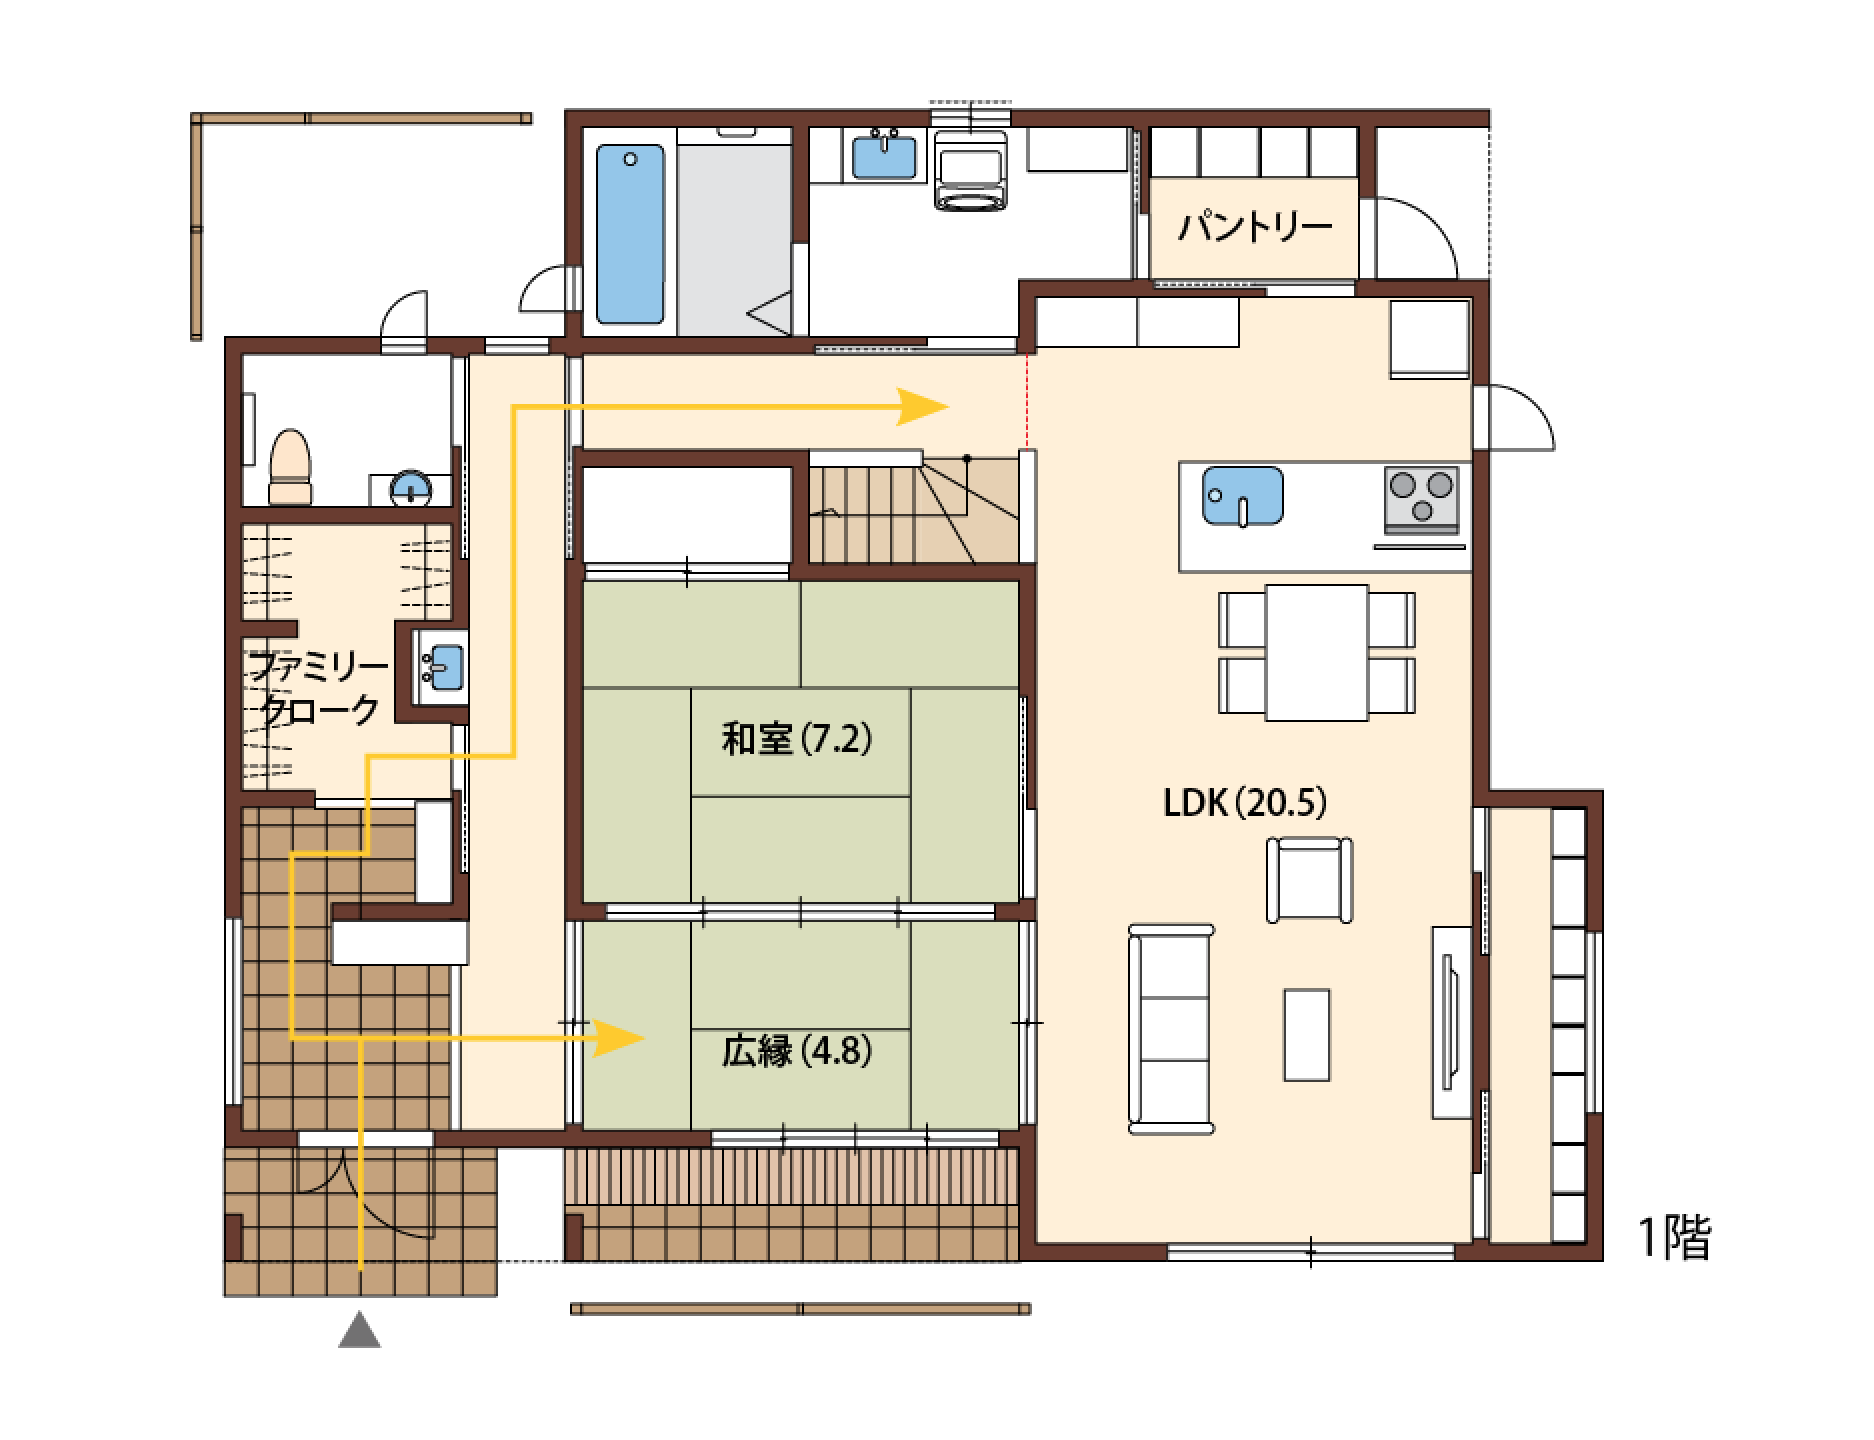 57坪 間取り 大人の和風モダンでくつろぐ注文住宅 兵庫県で家づくりならアイフルホーム